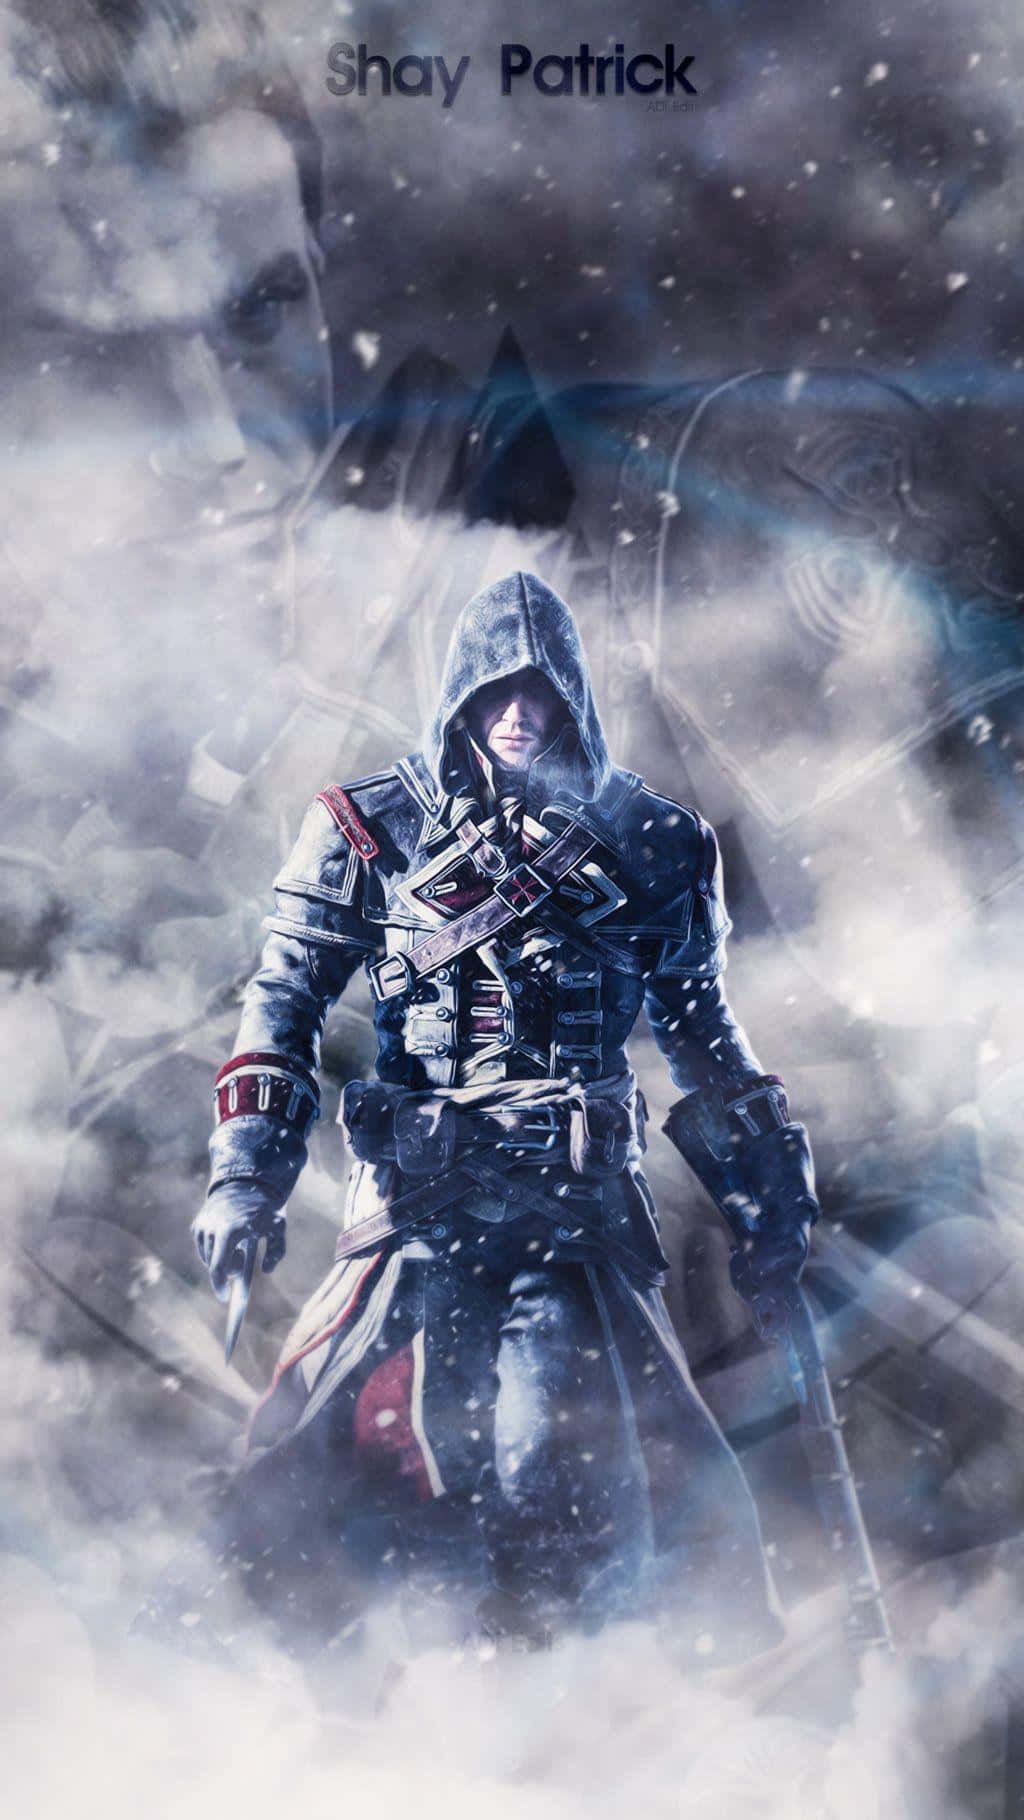 Spil Assassins Creed på farten - oplev åben verdens handling på din Iphone! Wallpaper